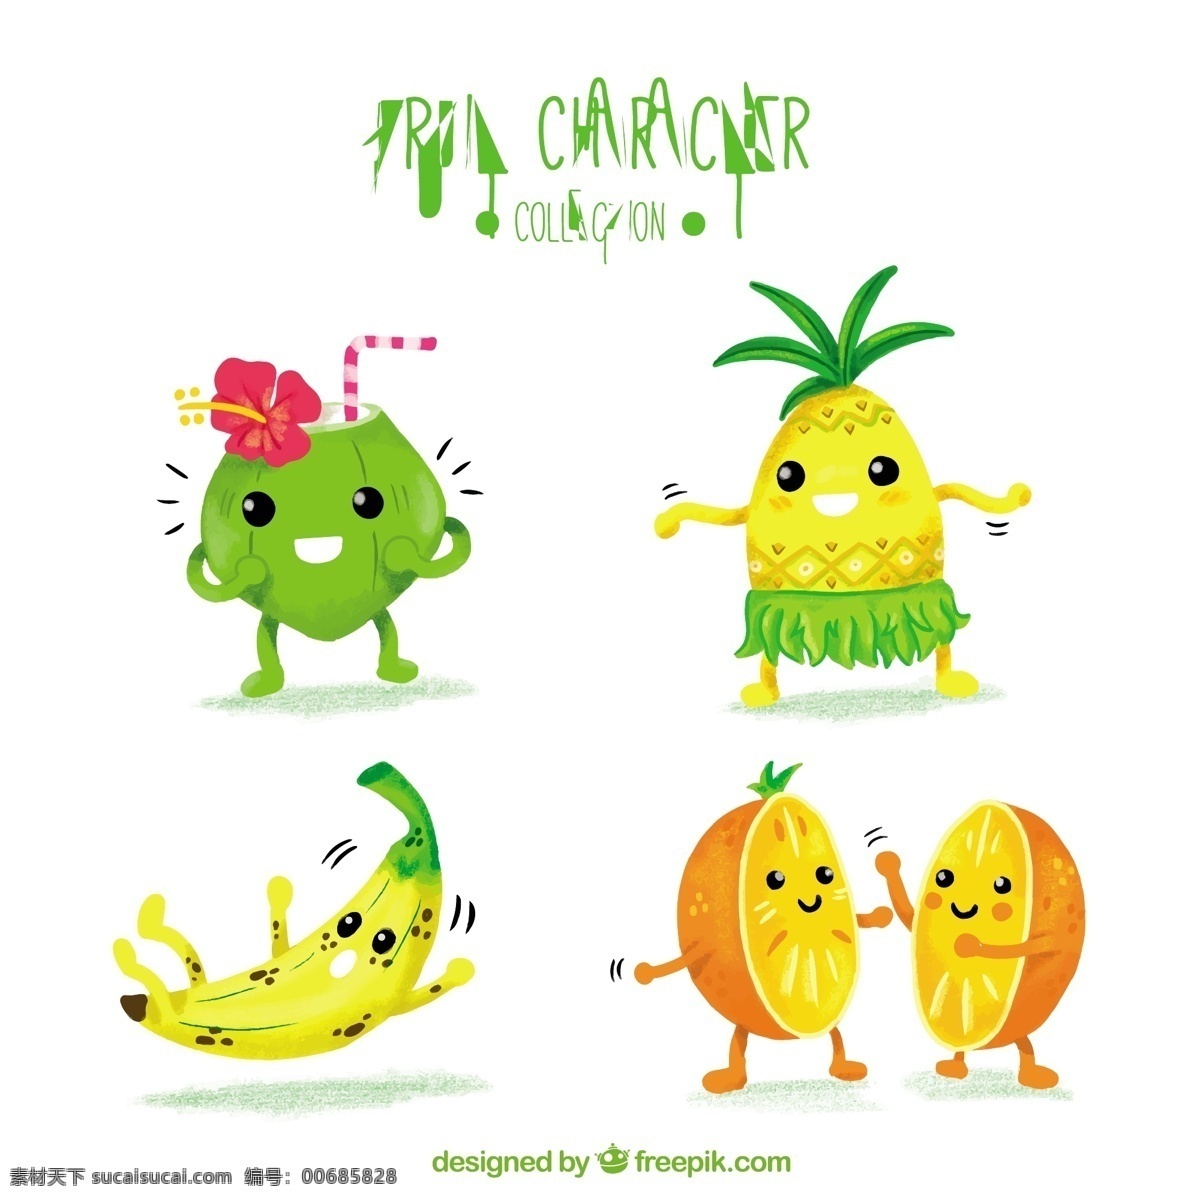 水彩 风格 中 各种 水果 特征 水彩画 食物 夏天 人物 颜色 橙色 快乐 热带 天然 香蕉 健康 有趣 菠萝 椰子 健康食品 营养 性格